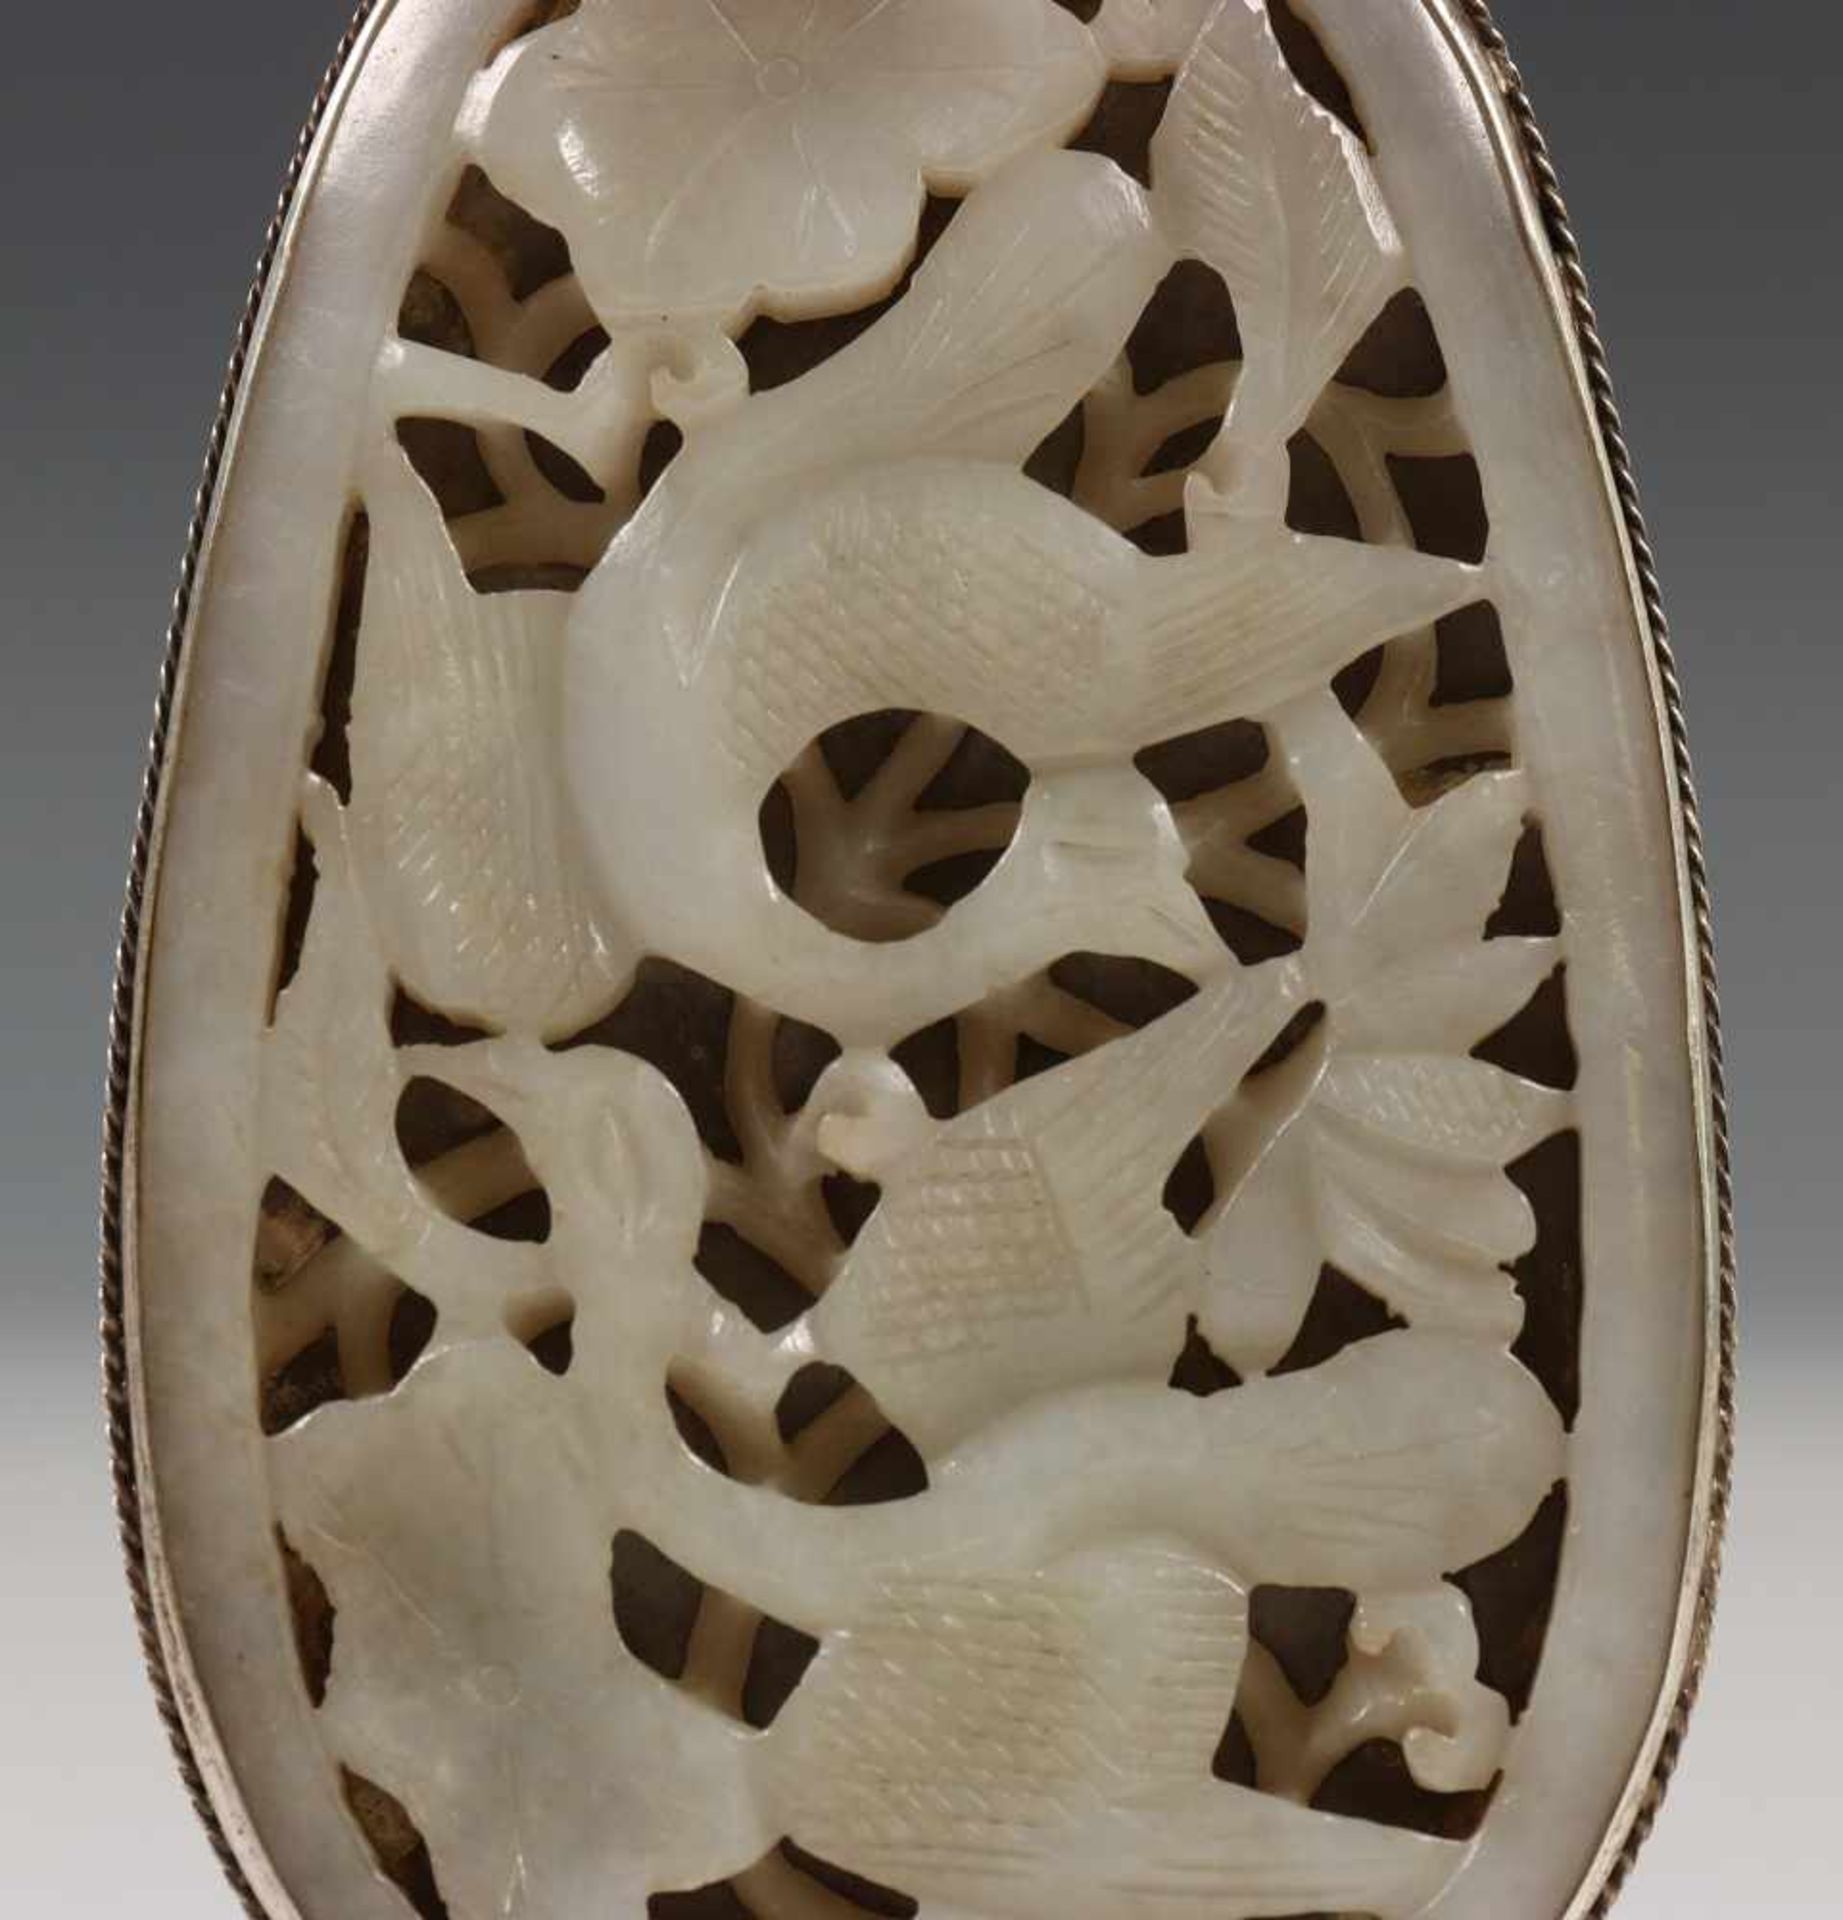 China, wit jadeit ajour pendantin zilveren montering, gekeurd, 12 x 6,5 cm. [1]300 - Bild 2 aus 4